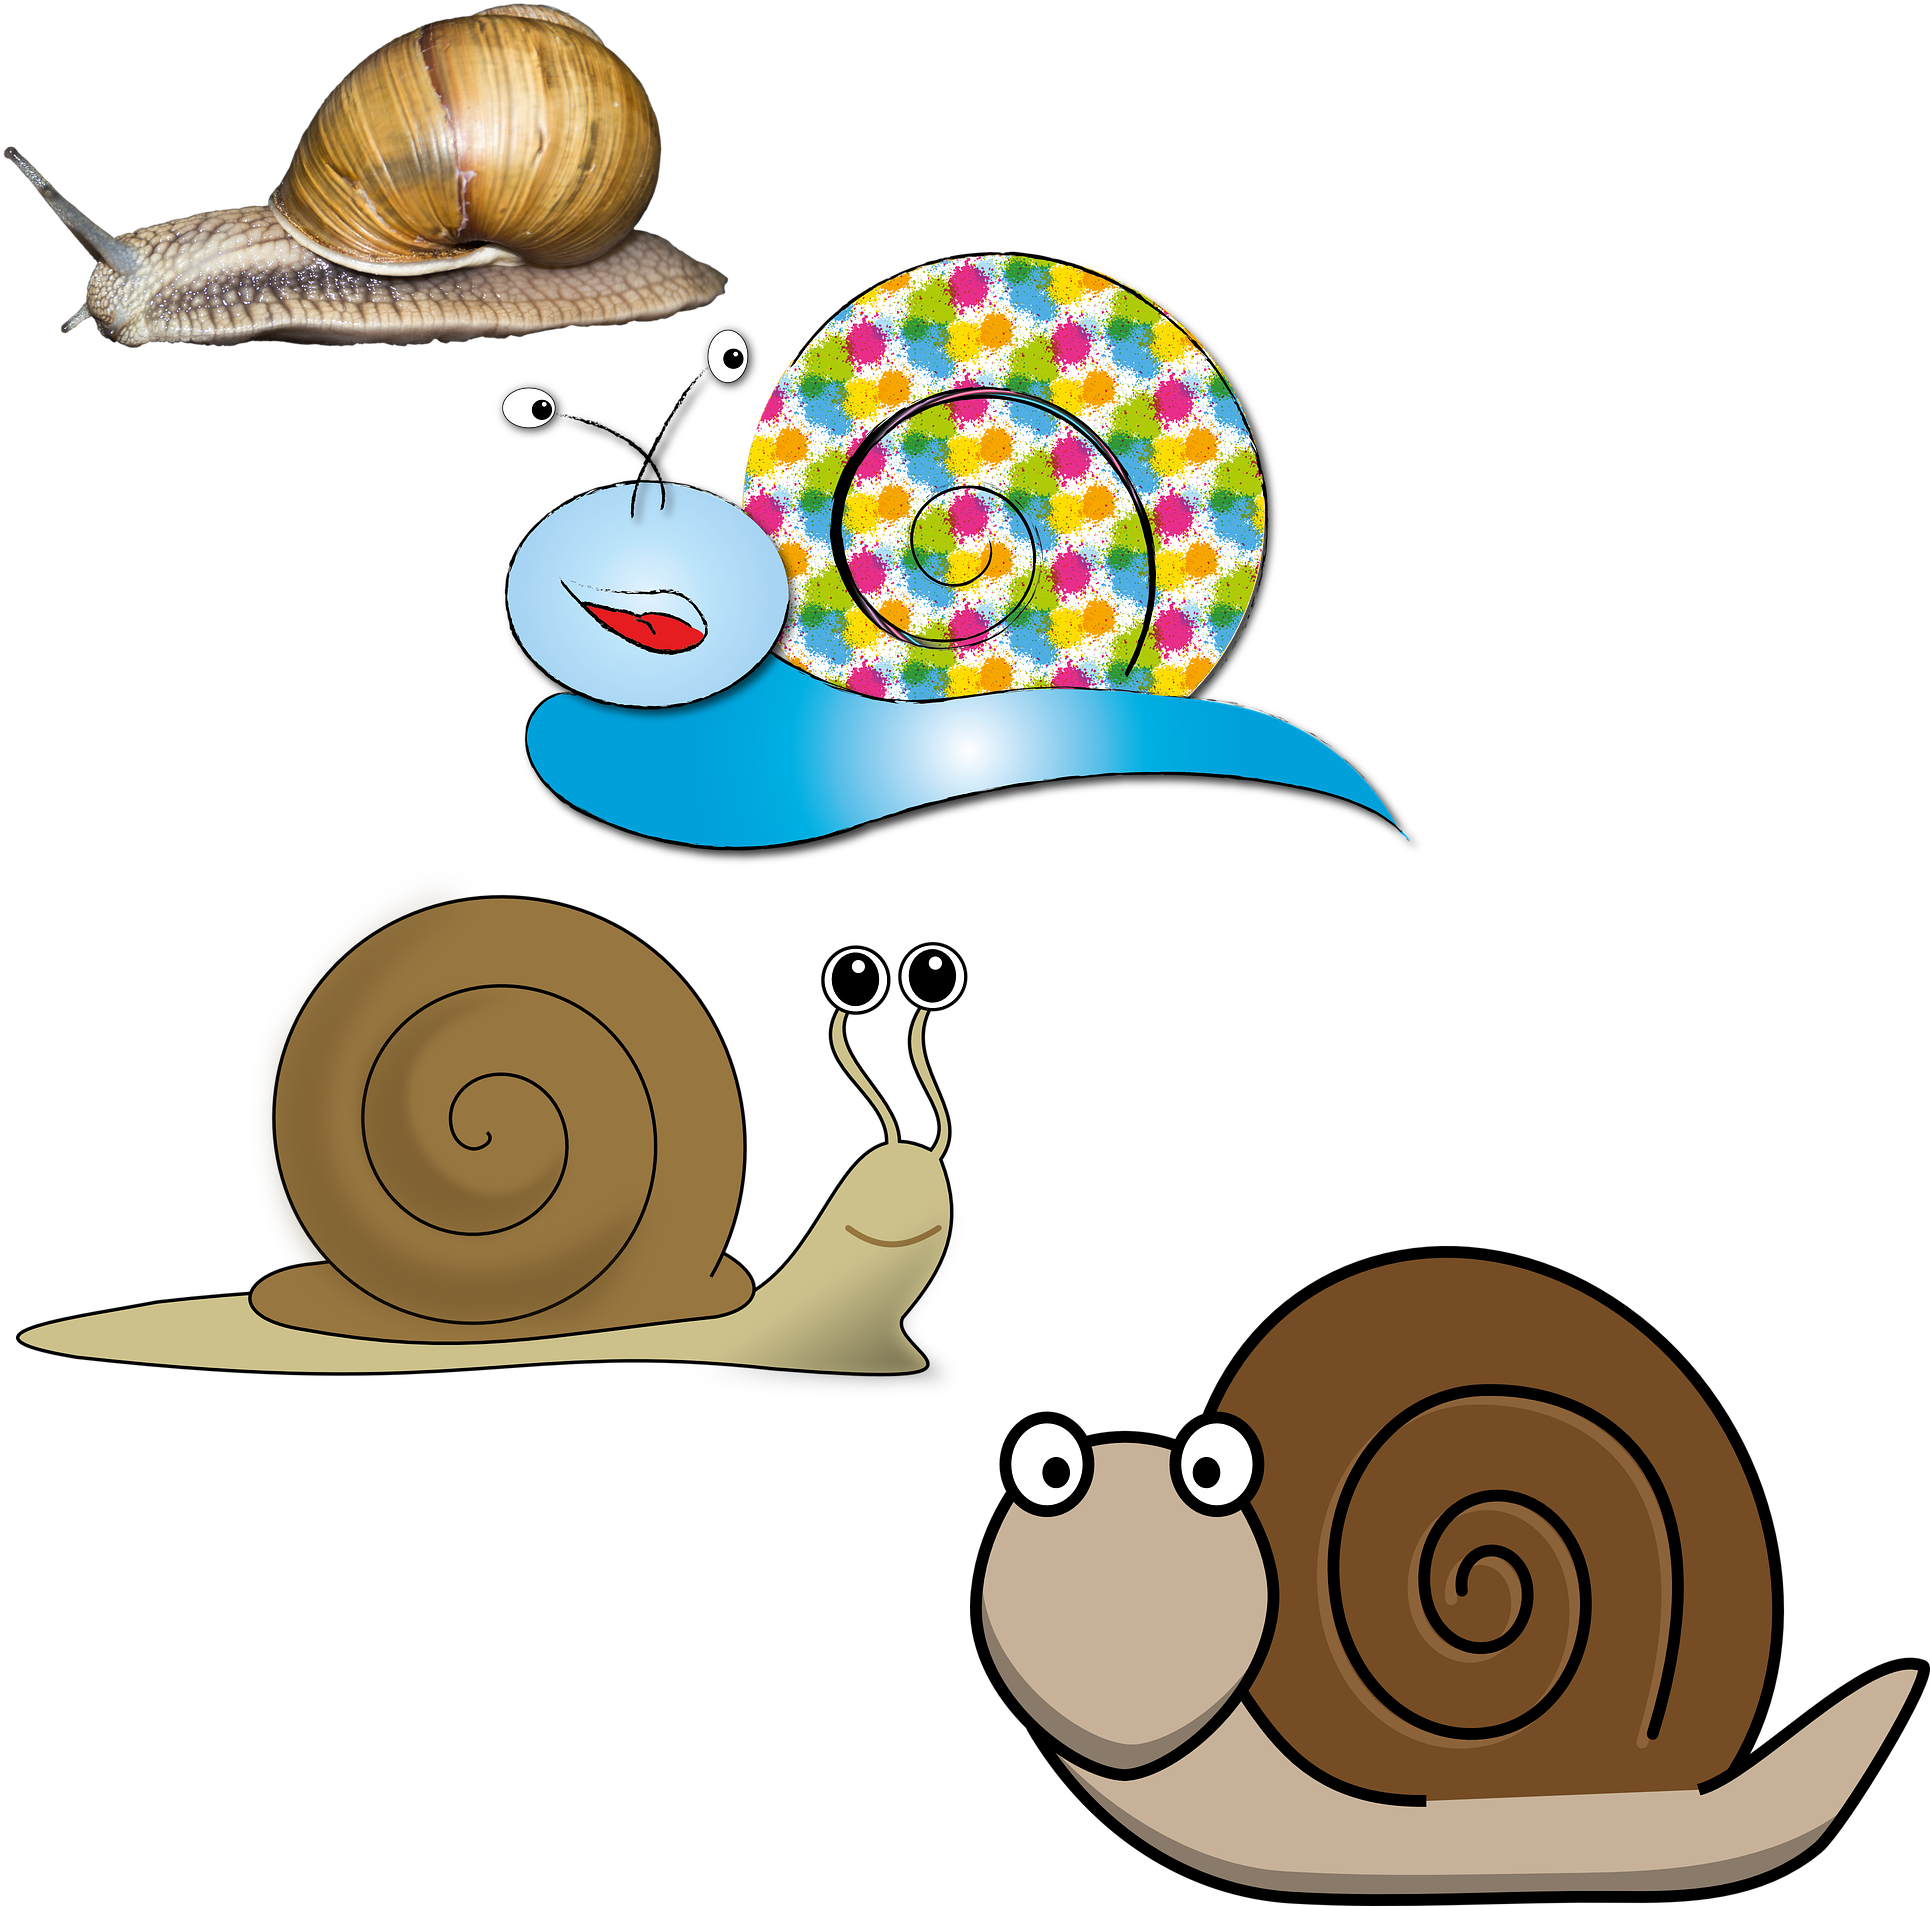 France Snail Illustration - France Snail Illustration (2035x2035)